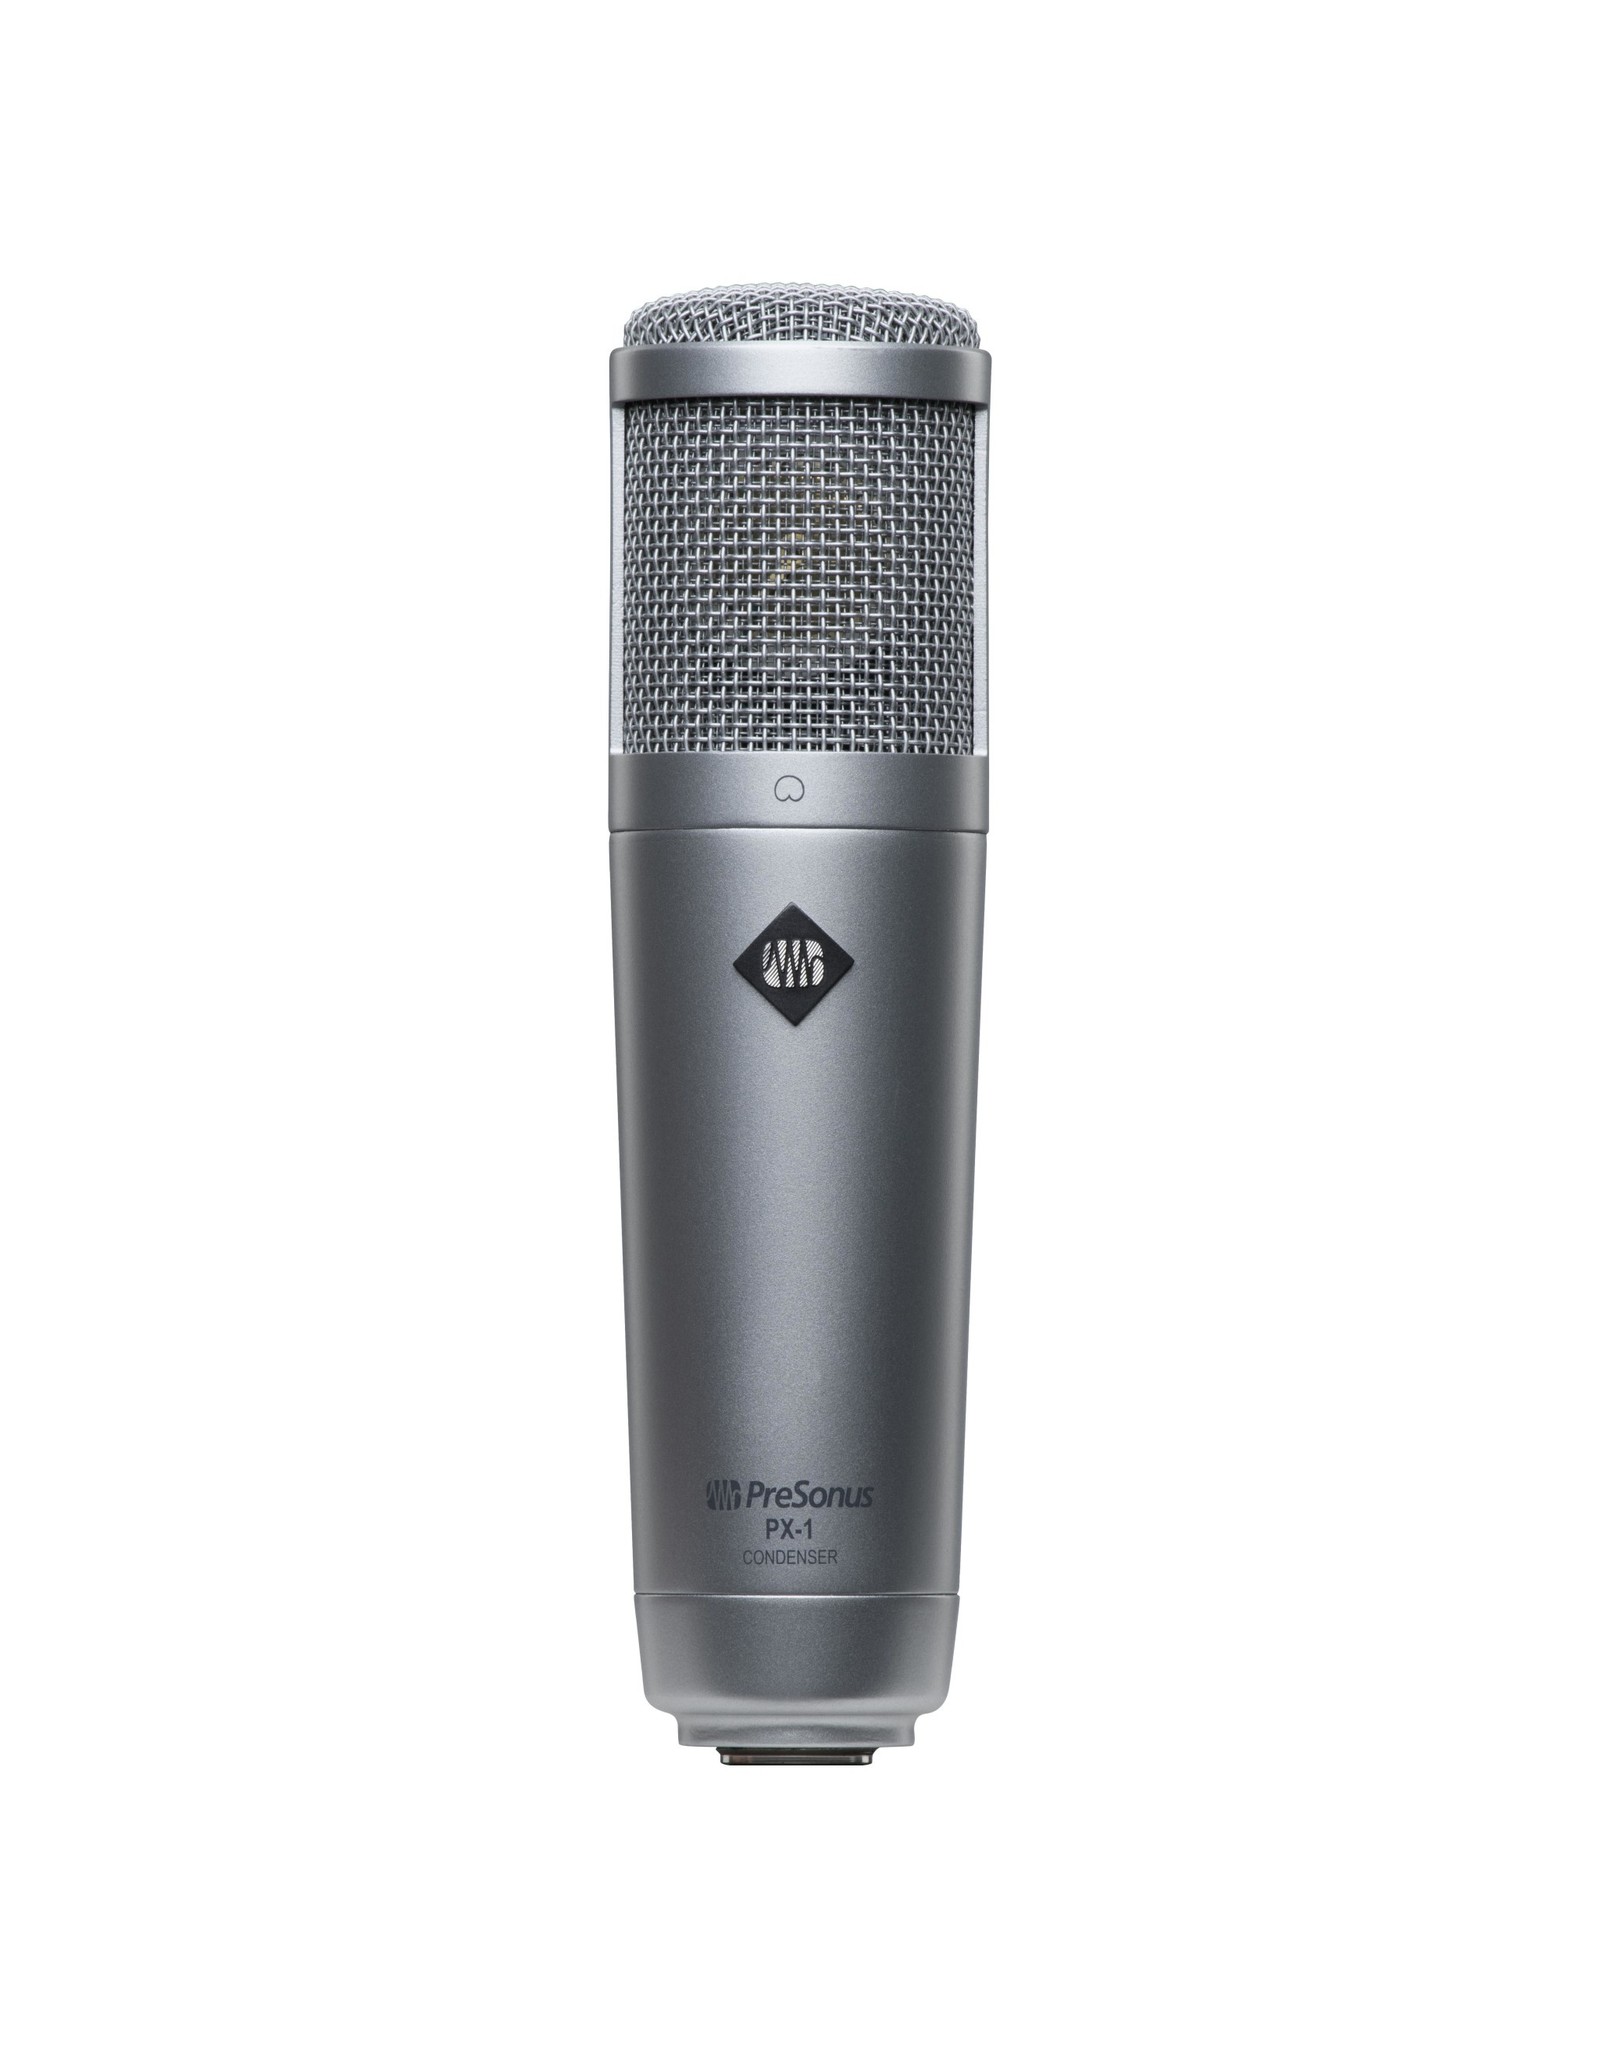 Presonus PreSonus PX-1 Large Diaphragm Cardioid Condenser Microphone, Black